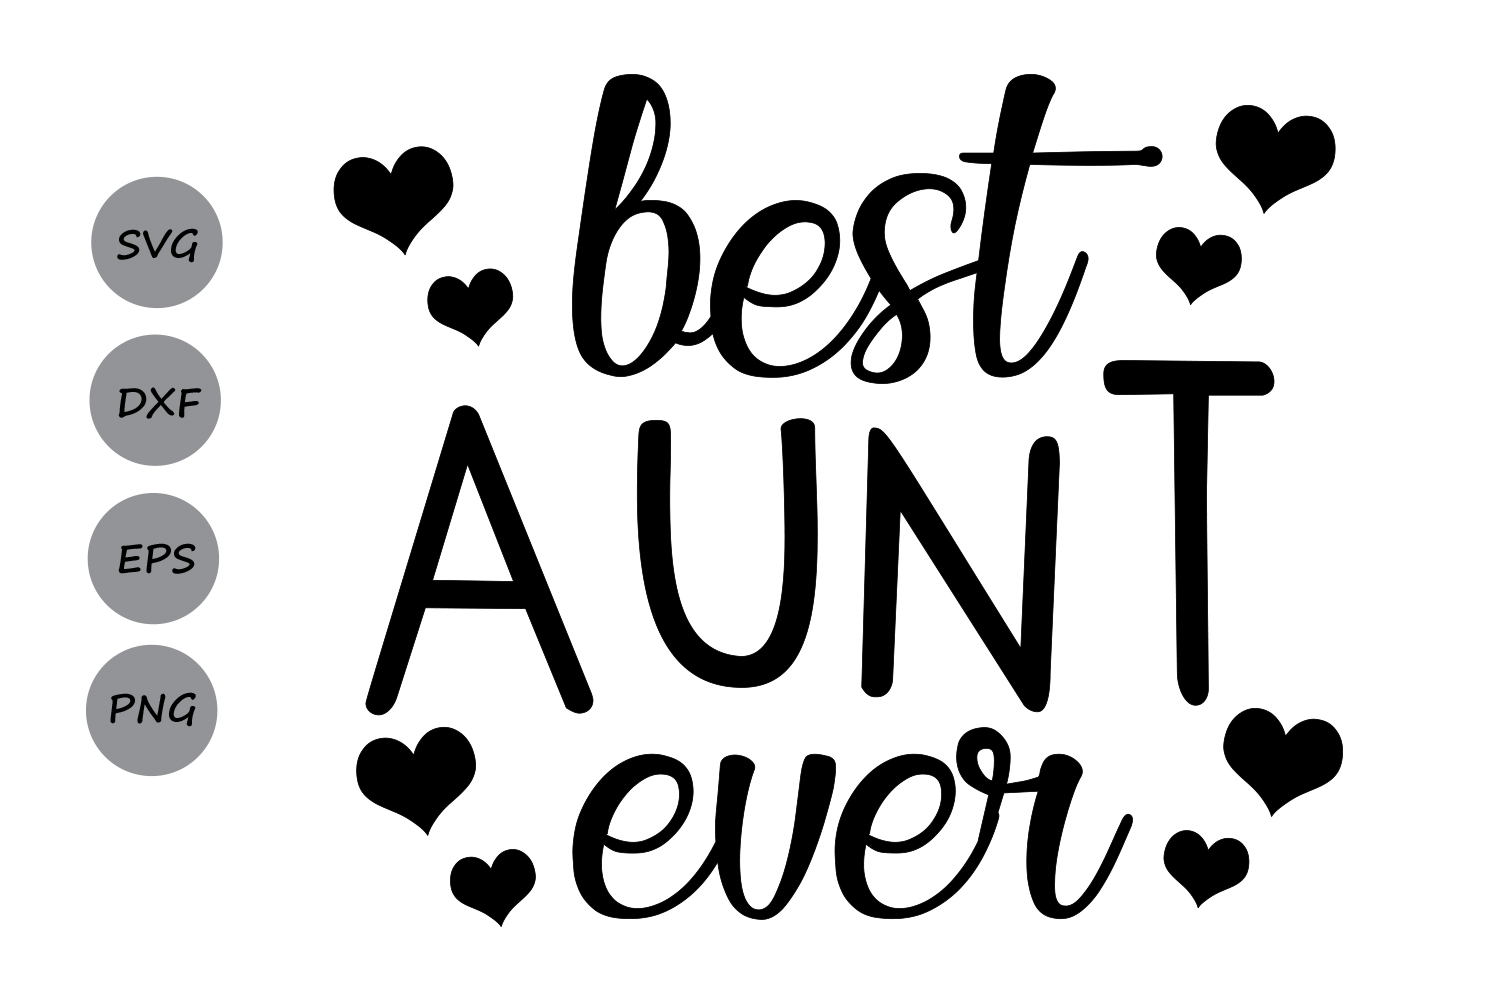 Best aunt ever